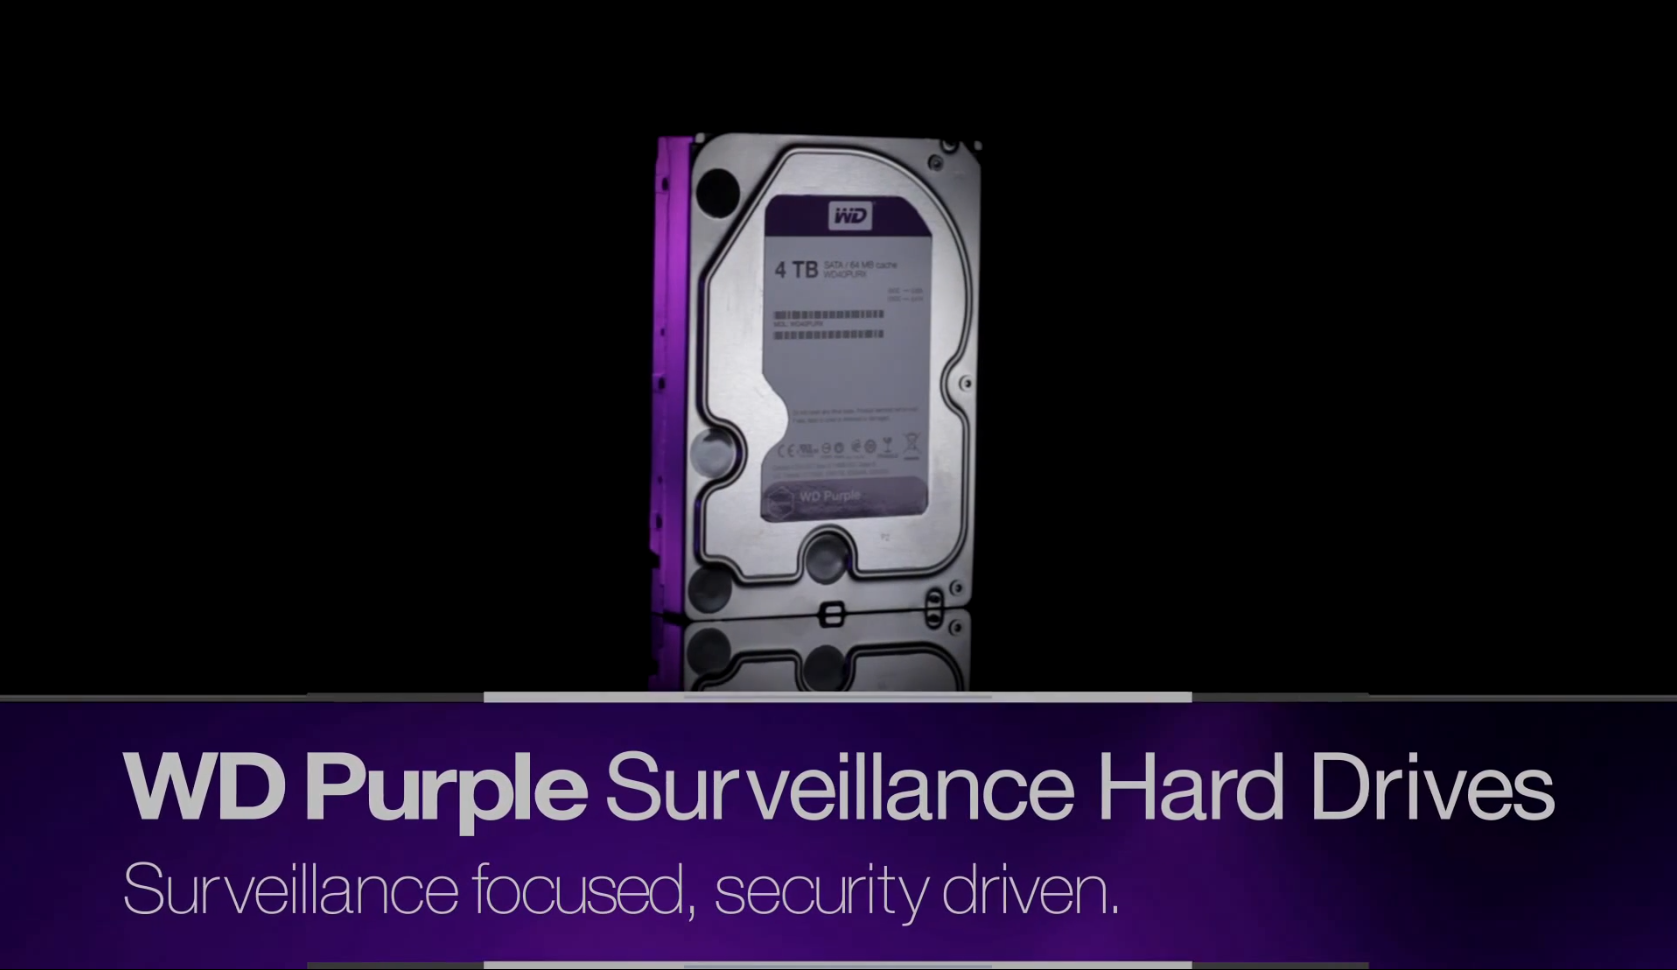 WD ra mắt dòng ổ cứng WD Purple phục vụ hệ thống giám sát